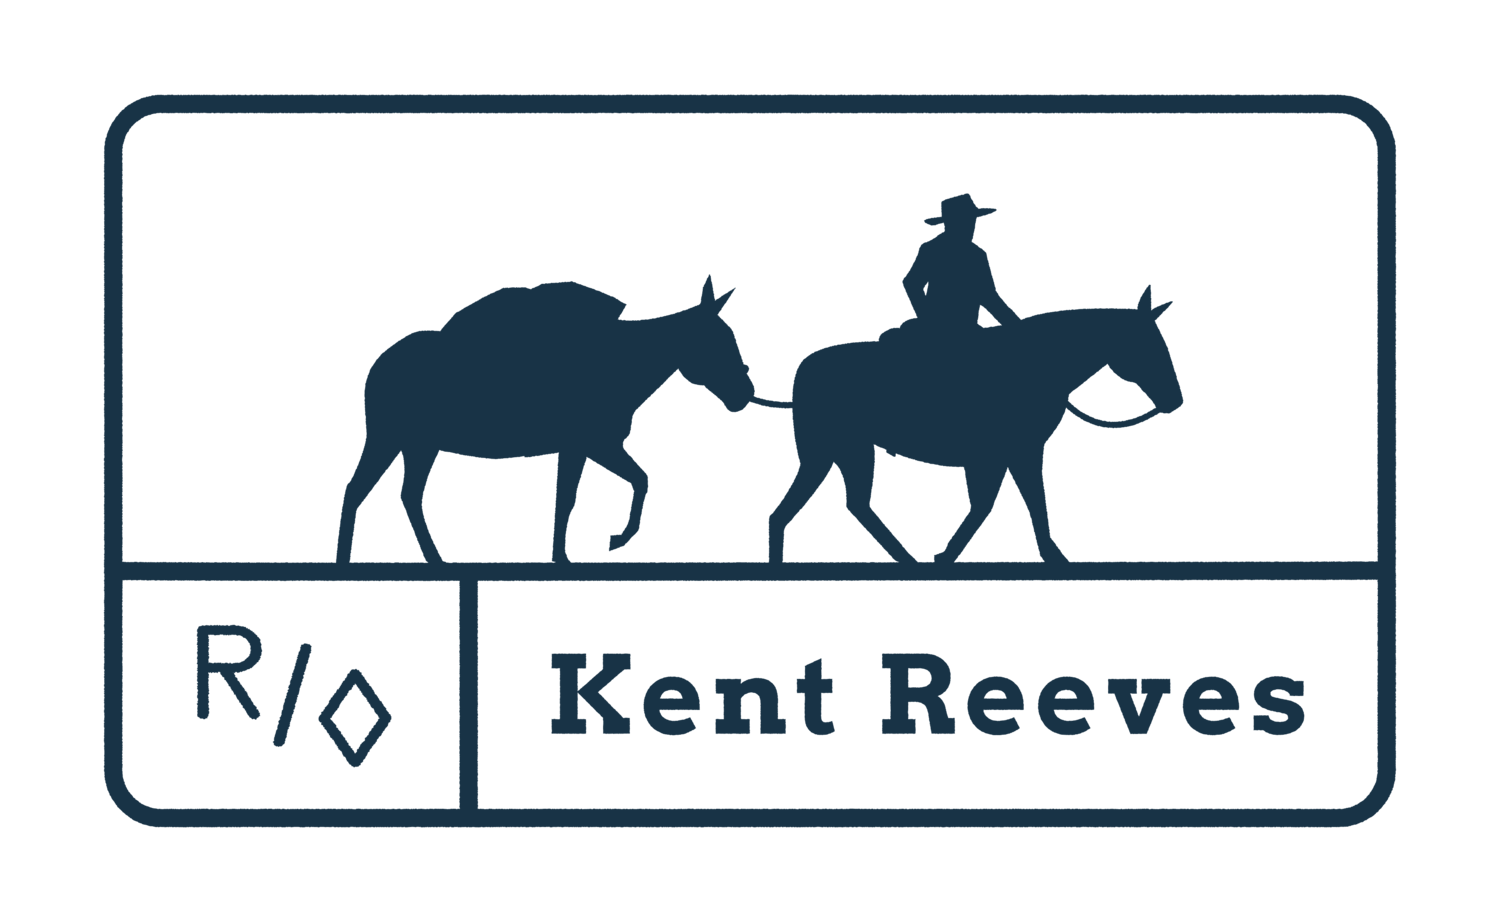 Kent Reeves